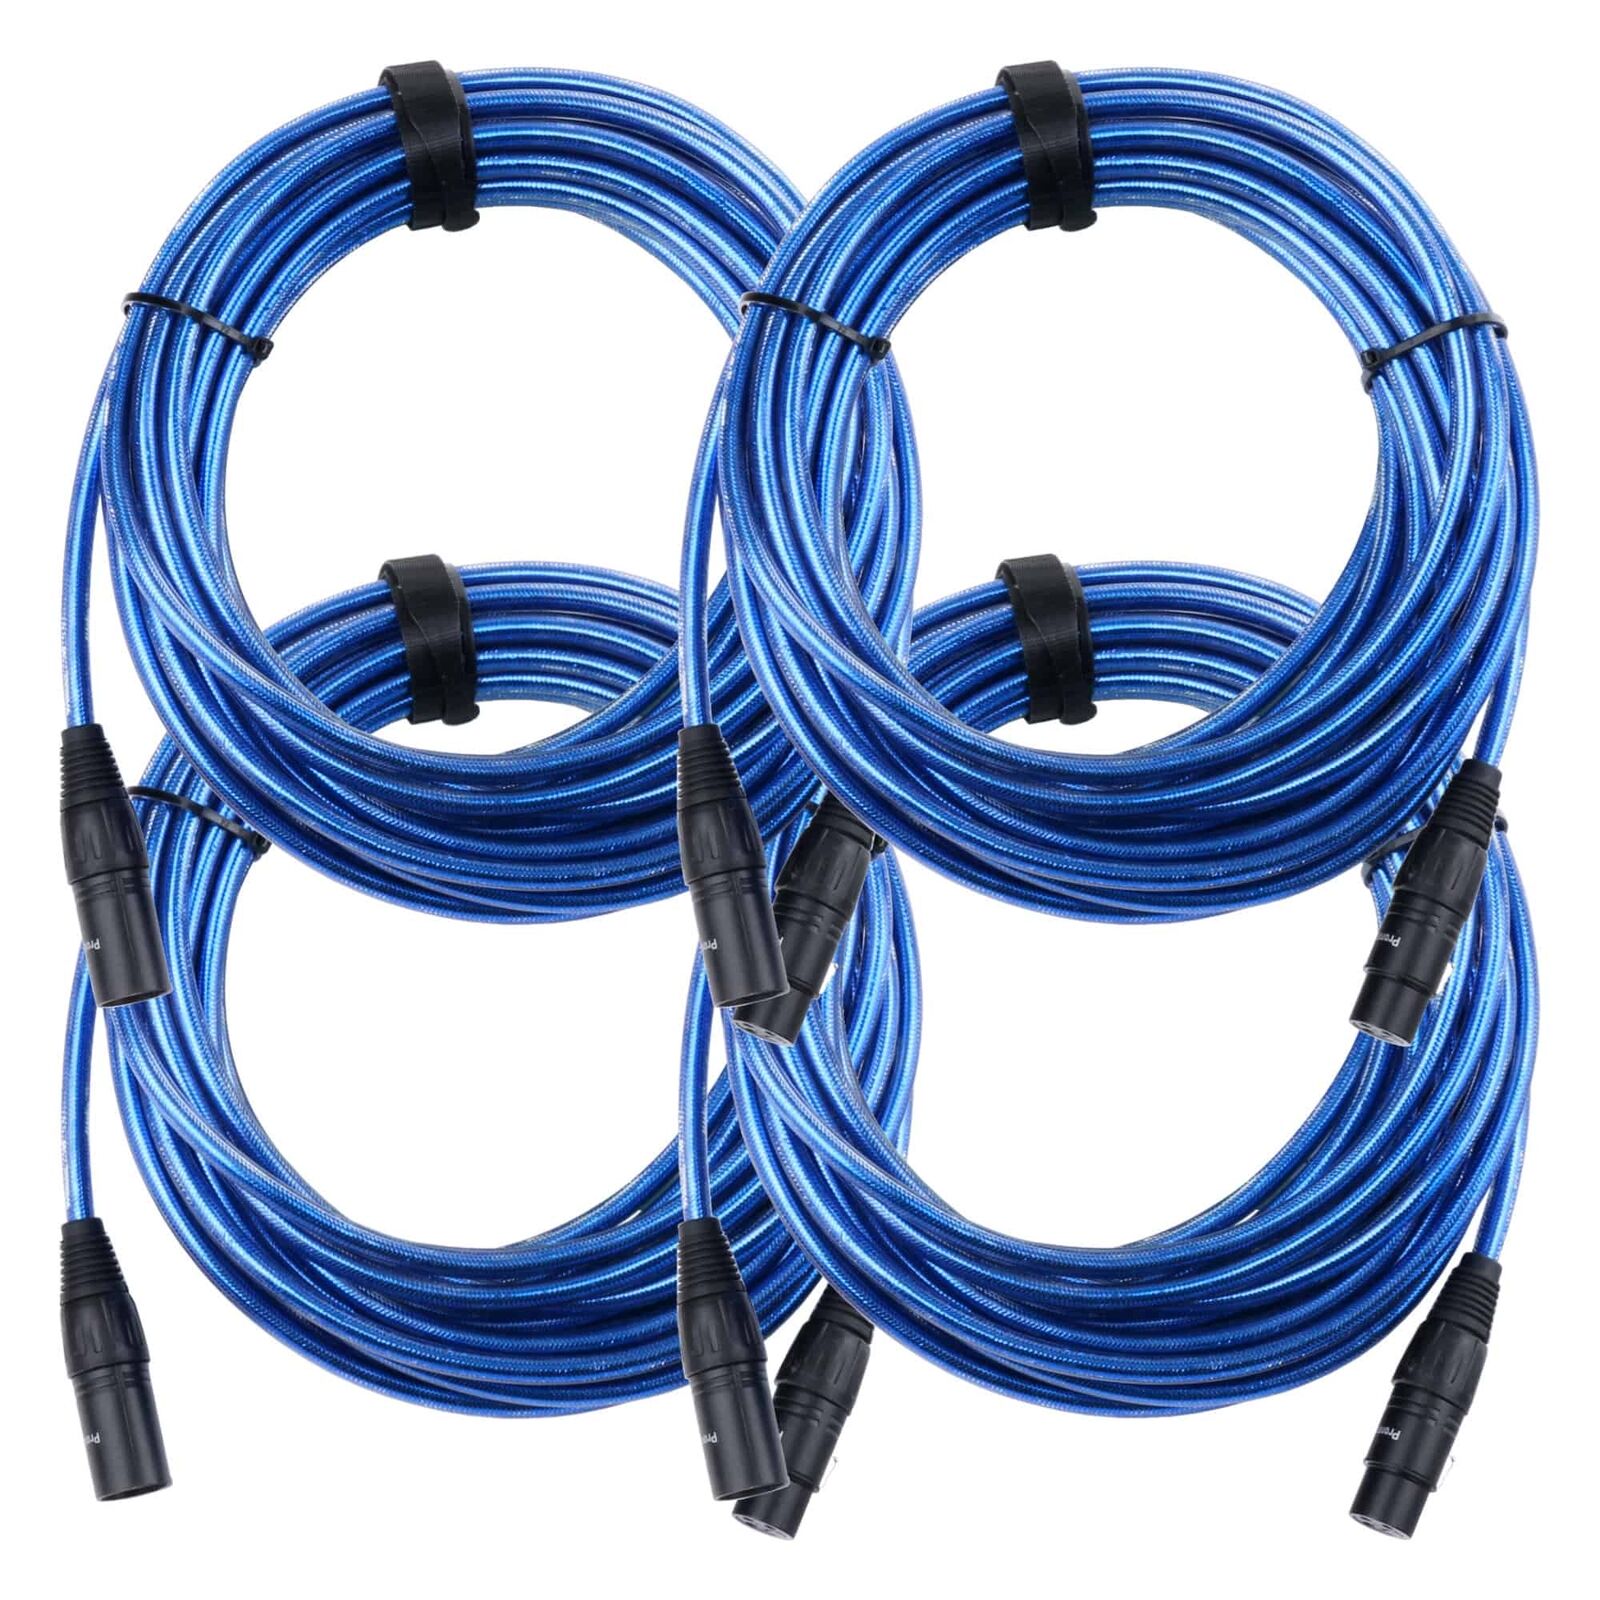 4x Set Profi DJ PA Mikrofon Kabel 10m Patch Cable XLR Male Female metallic blau